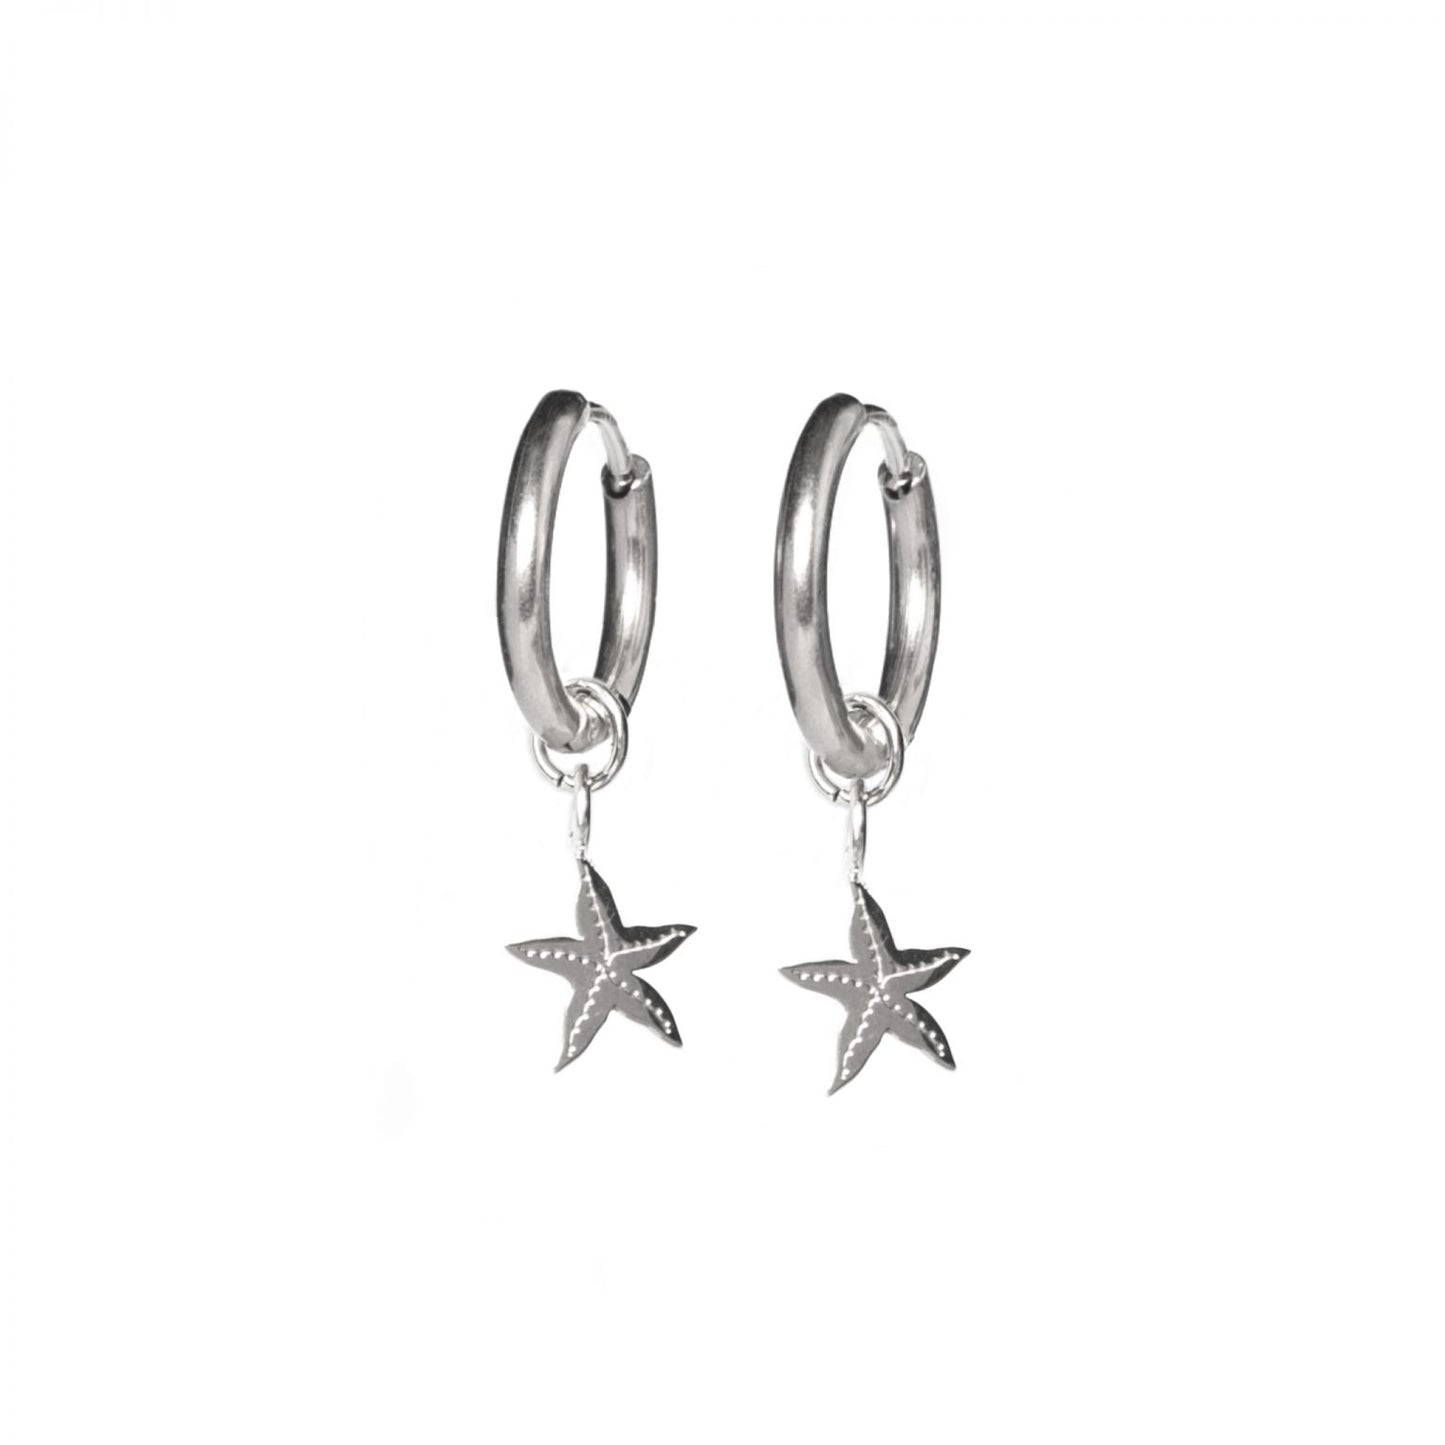 Earring starfisch silver PER STUK